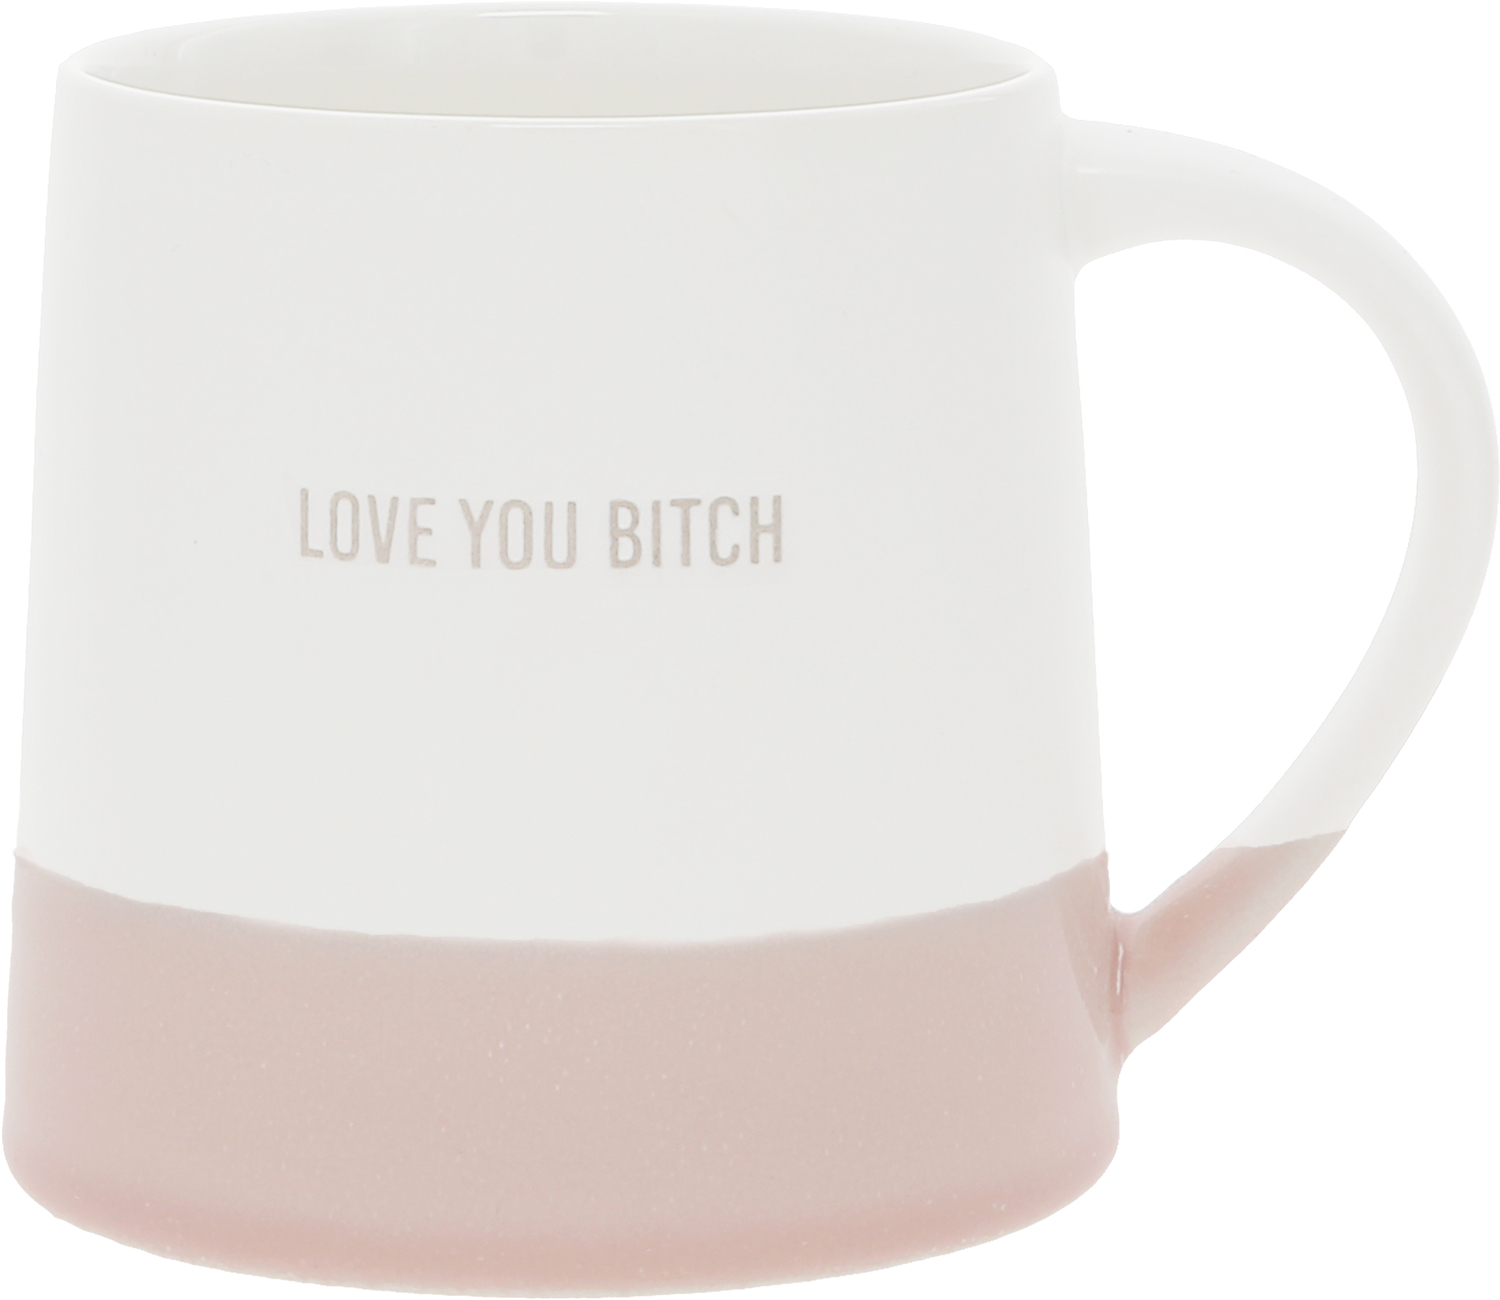 Love You Bitch by Love You - Love You Bitch - 17 oz Mug